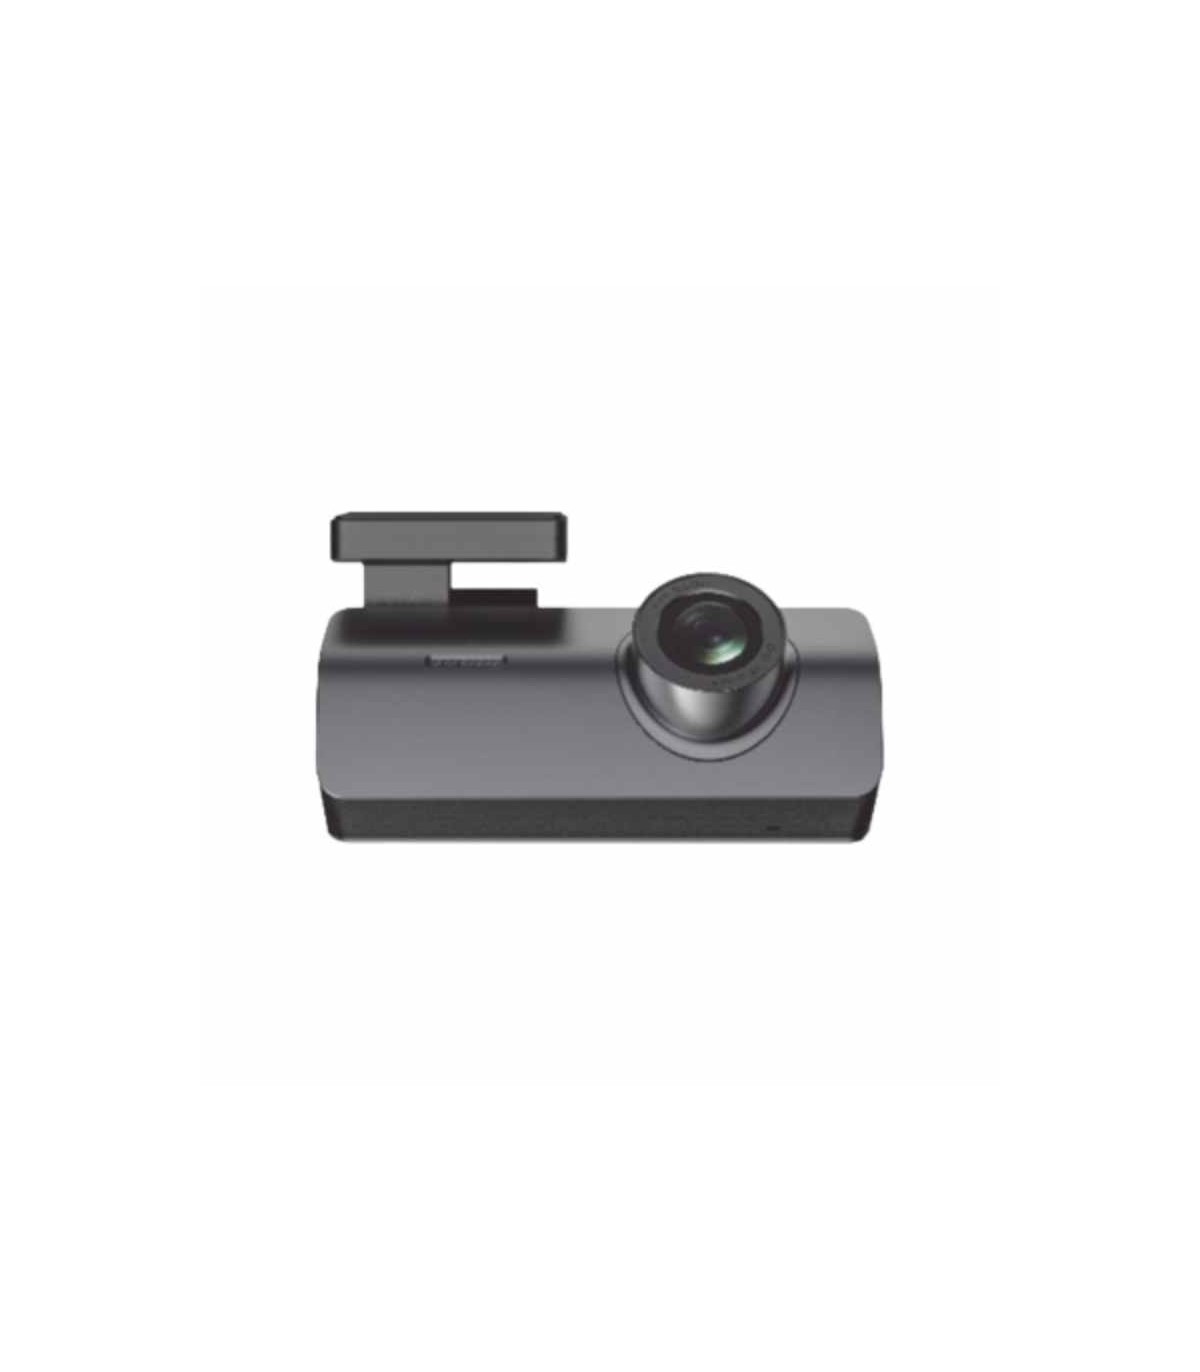 Kit de Cámara Frontal y Trasera con Sensor G - 1080p/720p